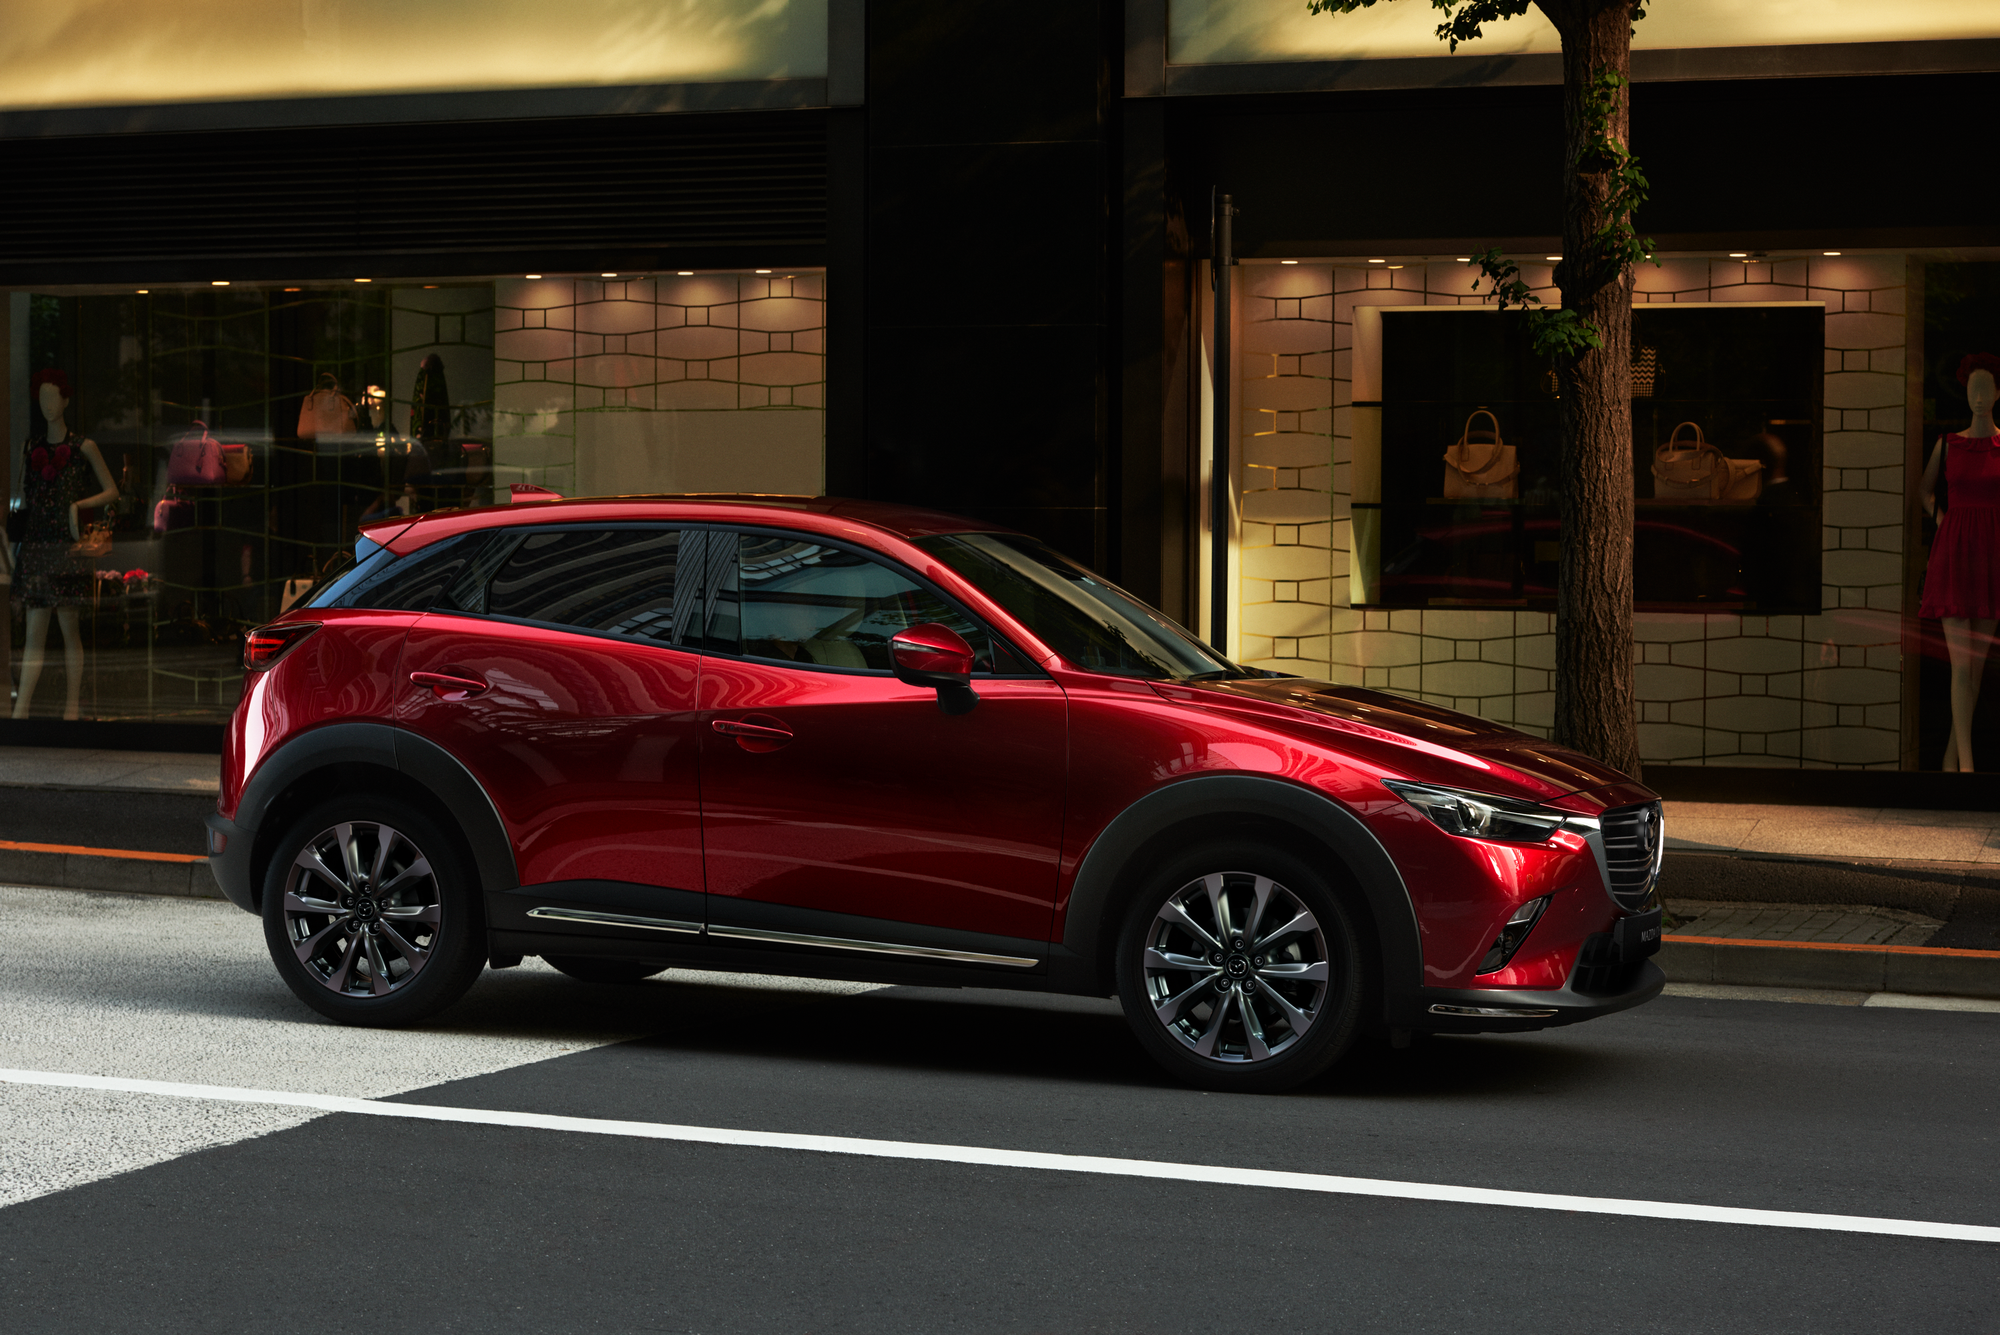 Tầm giá 600 triệu, khách hàng có thể sở hữu những mẫu xe nào của Mazda? - Ảnh 4.